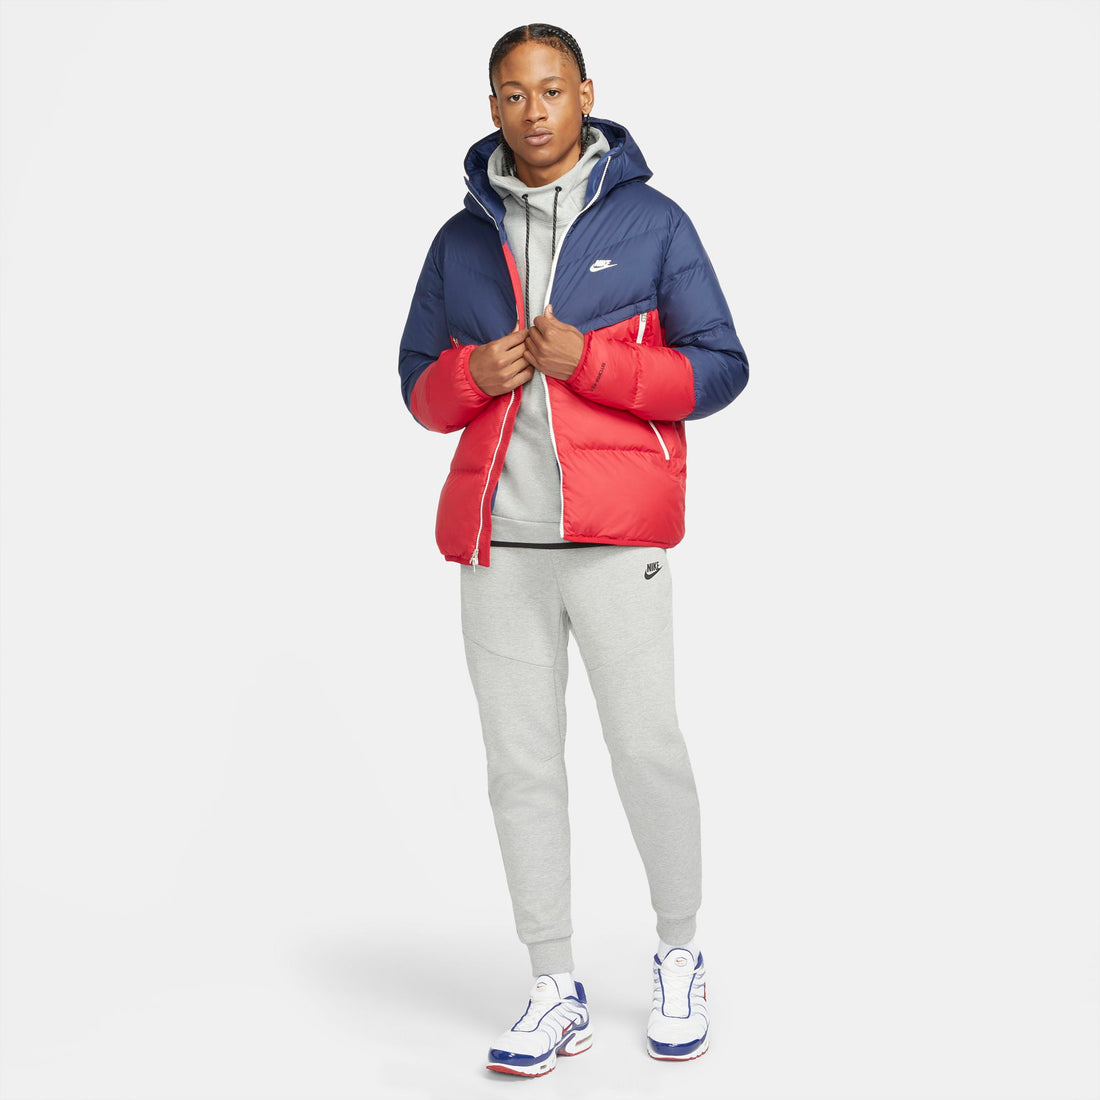 Nike Sportswear Storm-FIT City Series Men's Hooded Jacket